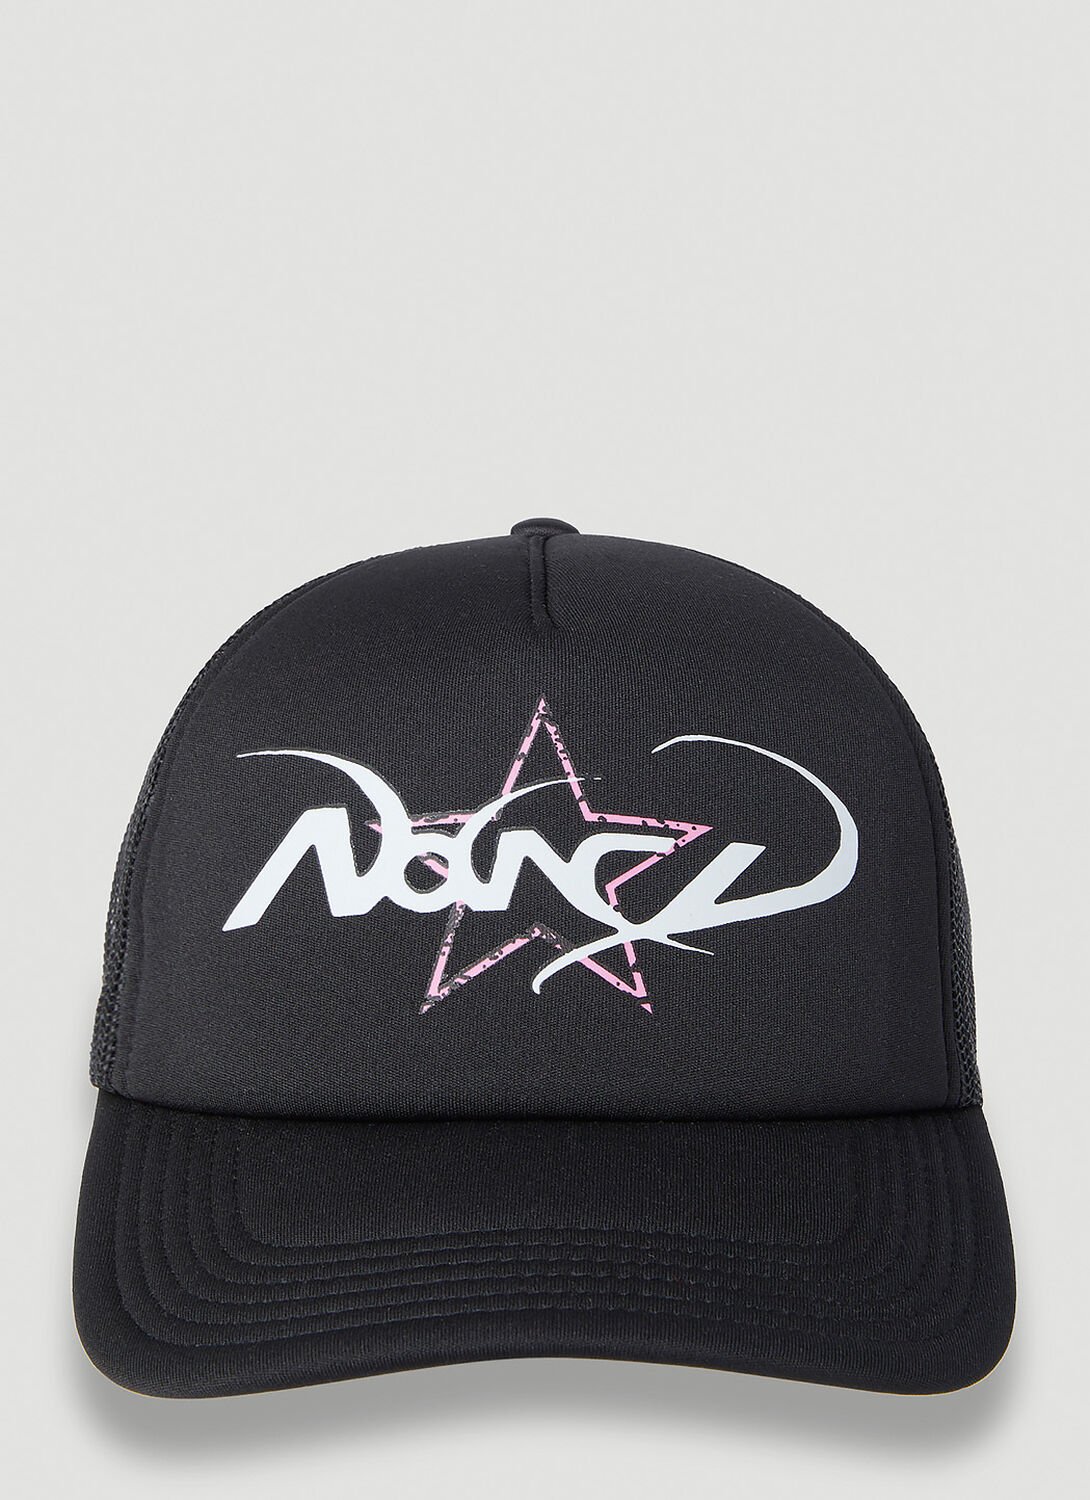 Nancy Glam Trucker Cap In Black